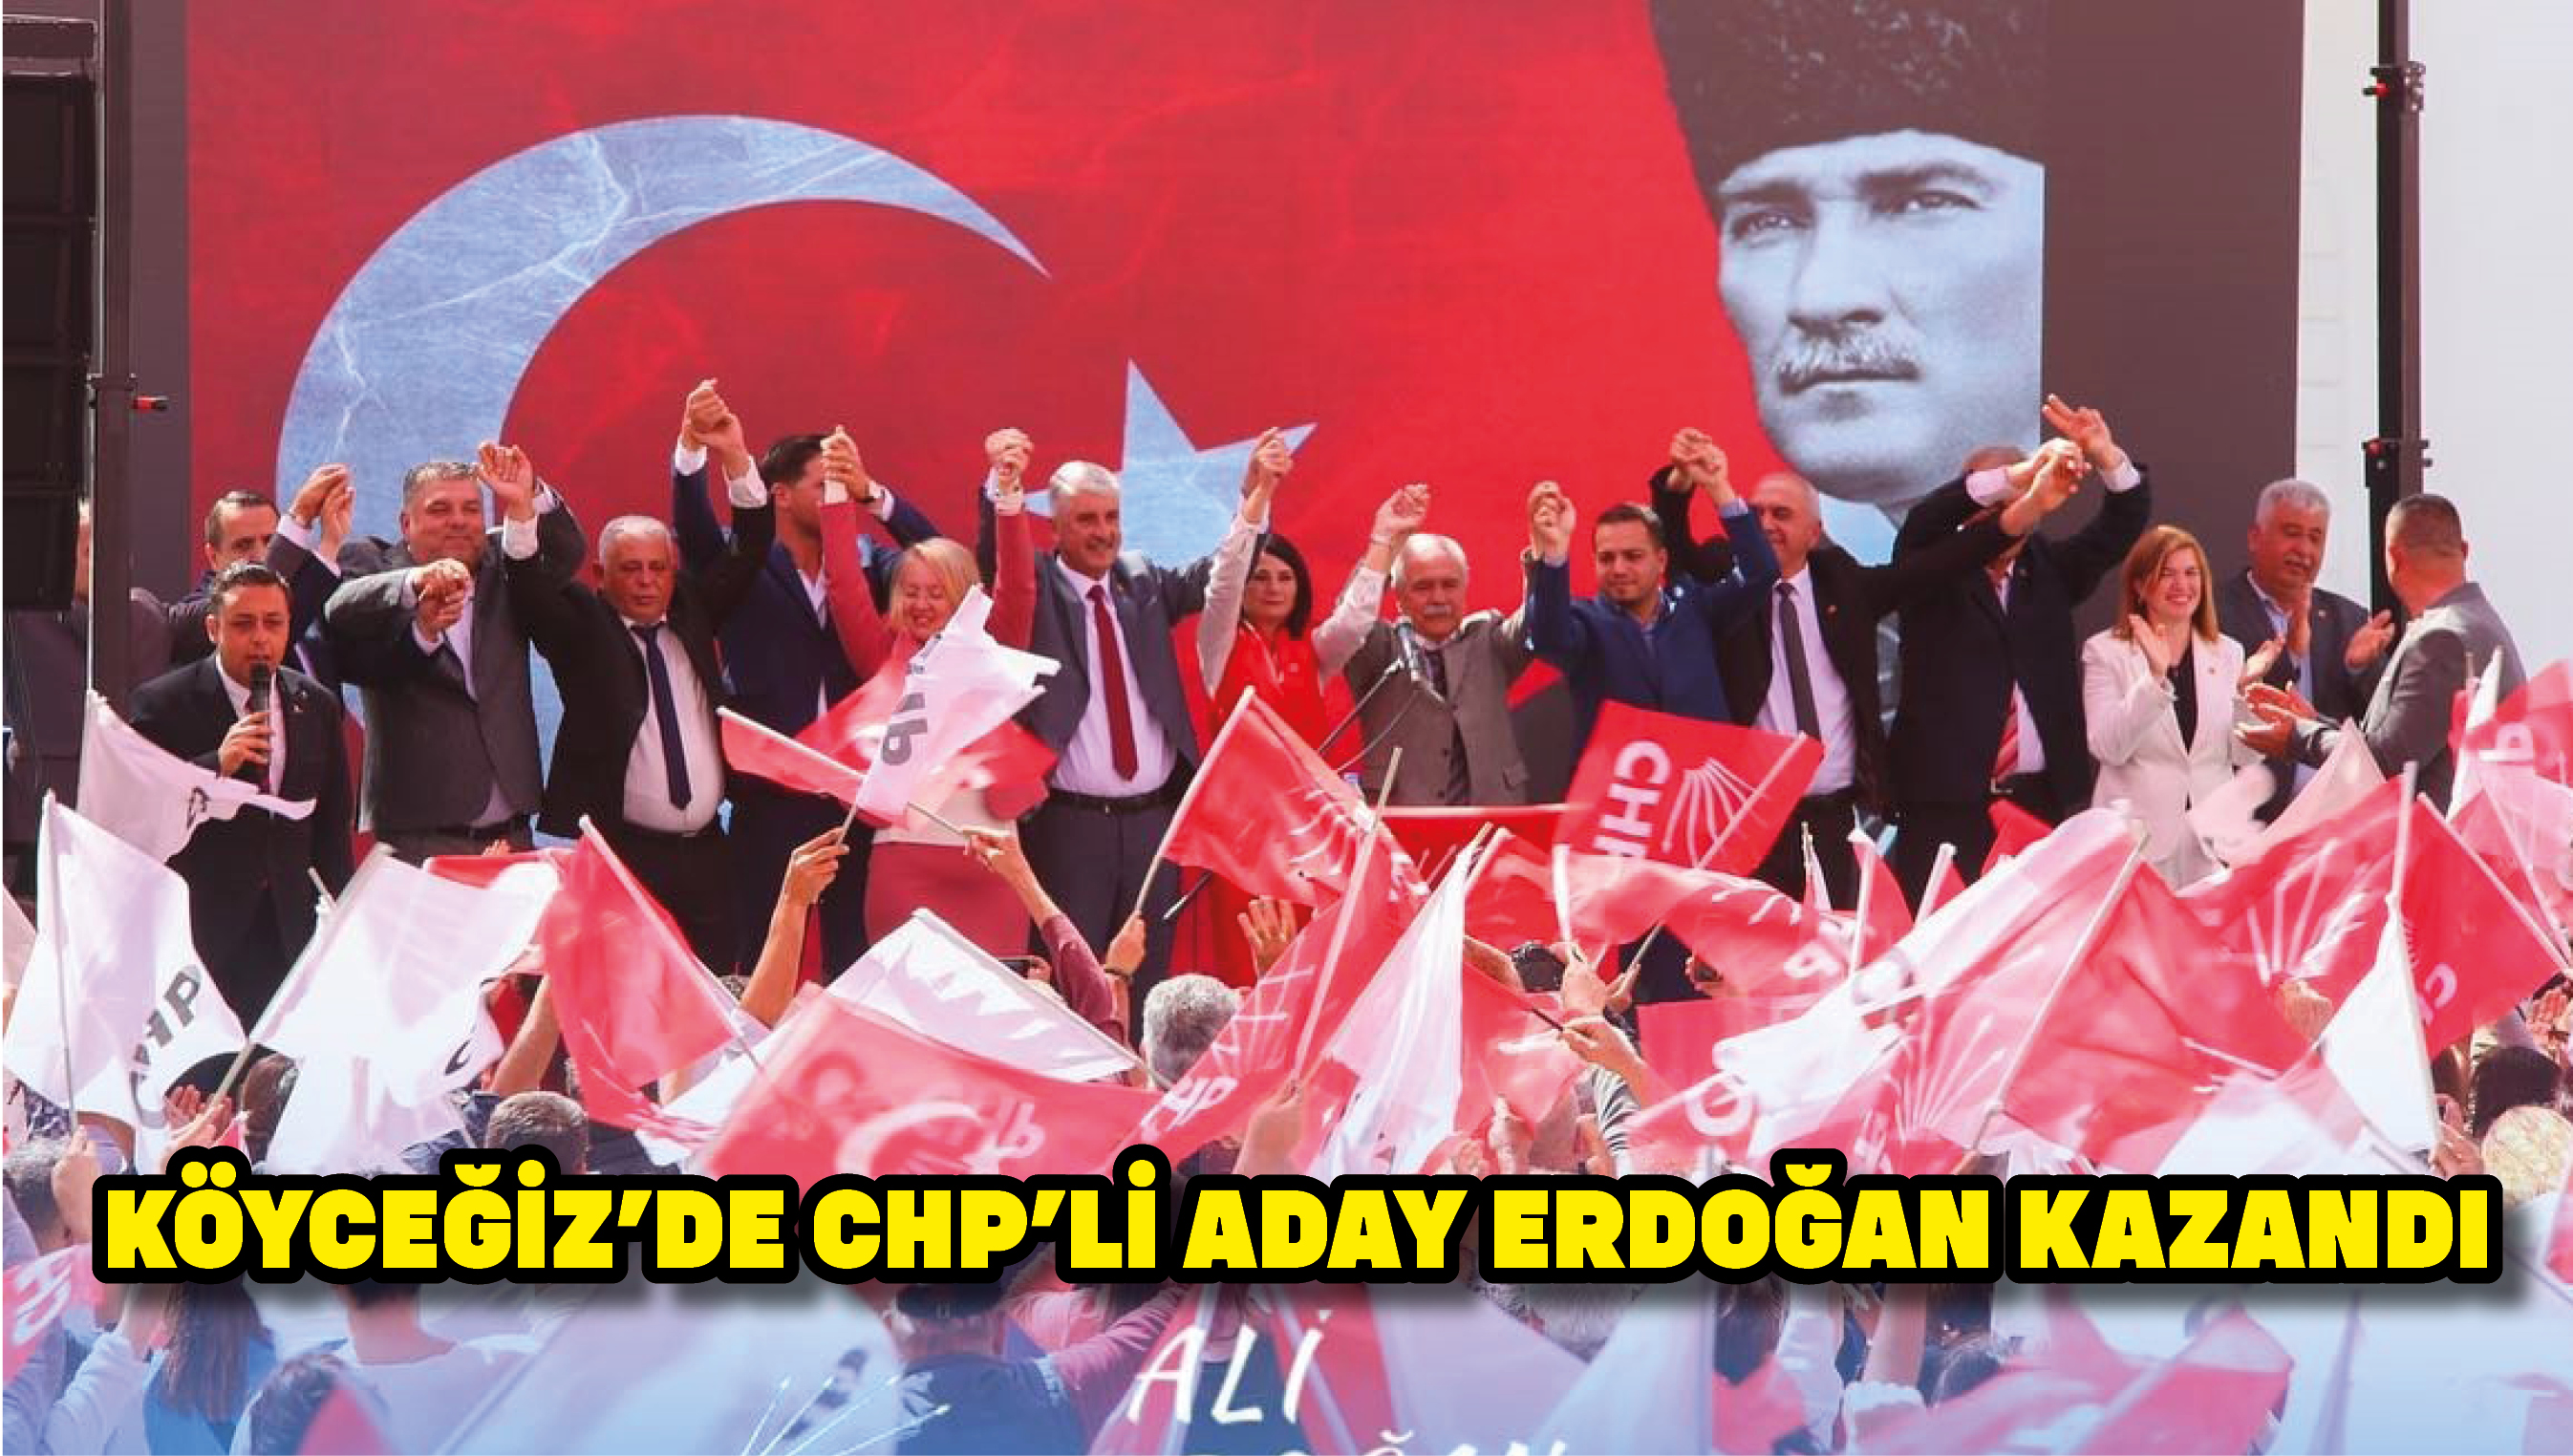 Köyceğiz’de CHP’li aday Erdoğan kazandı